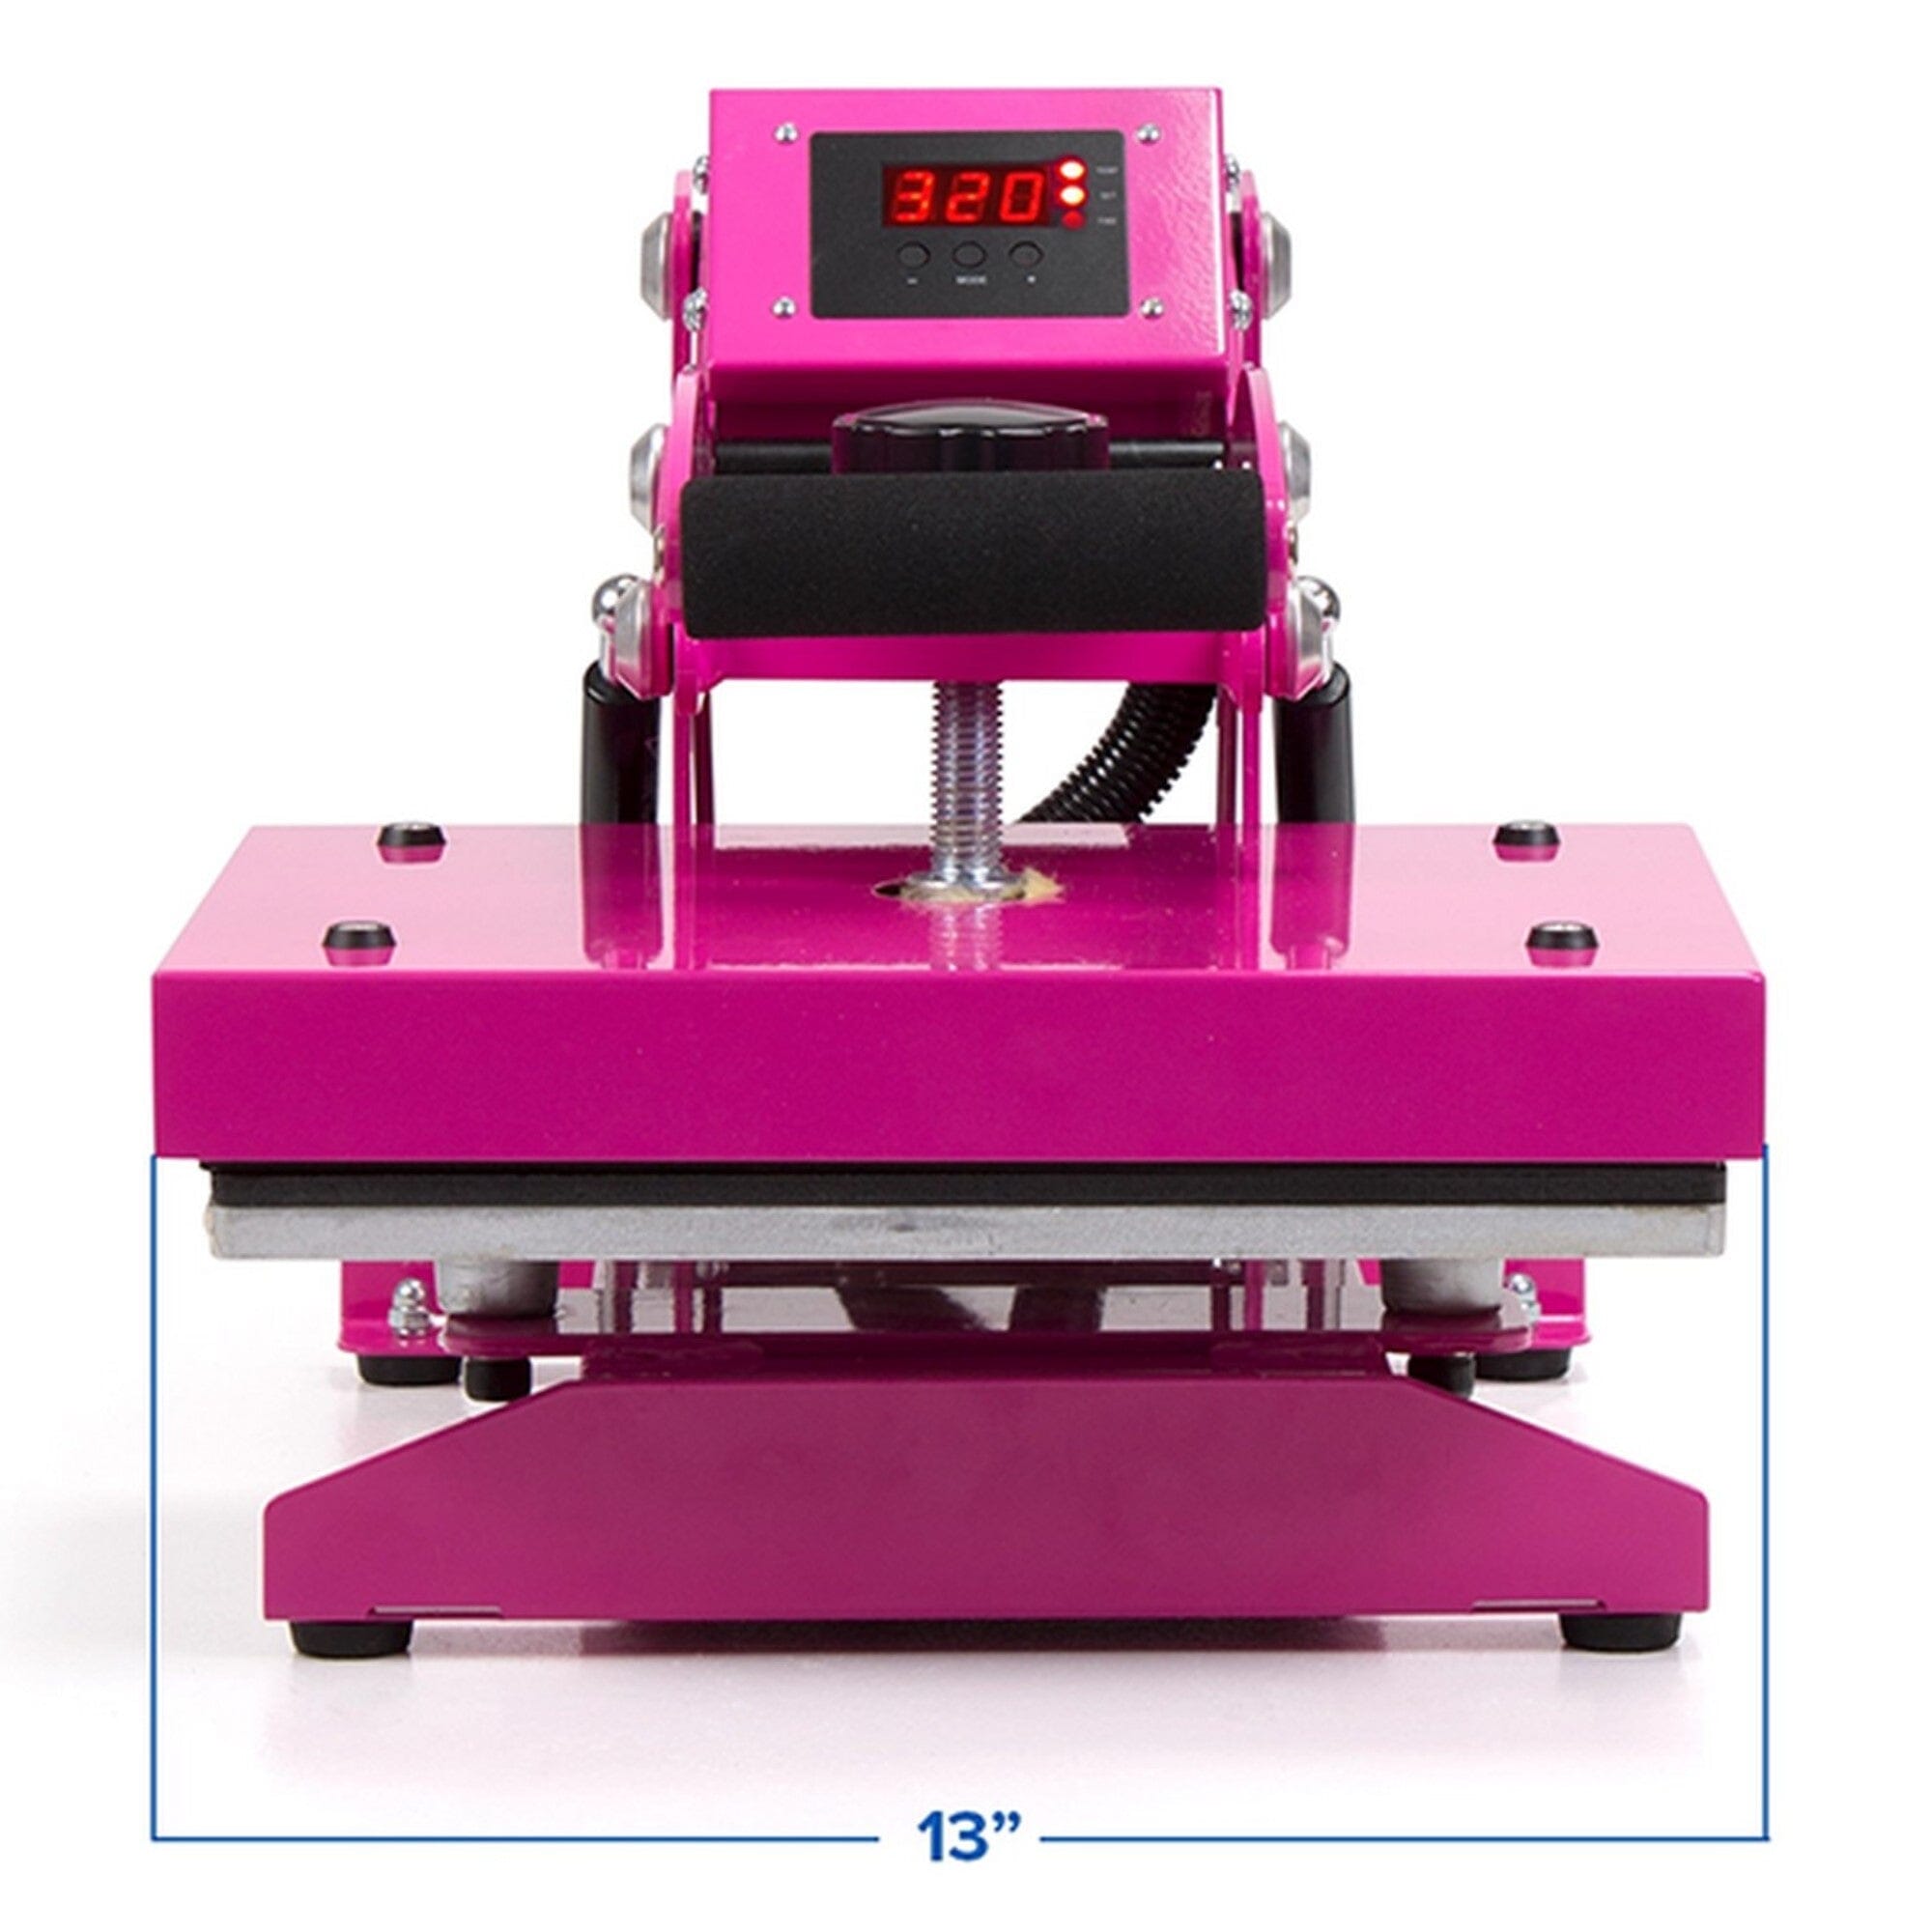 HPN CraftPro 12 x 15 Swing Away Crafting Transfer Machine : Pink